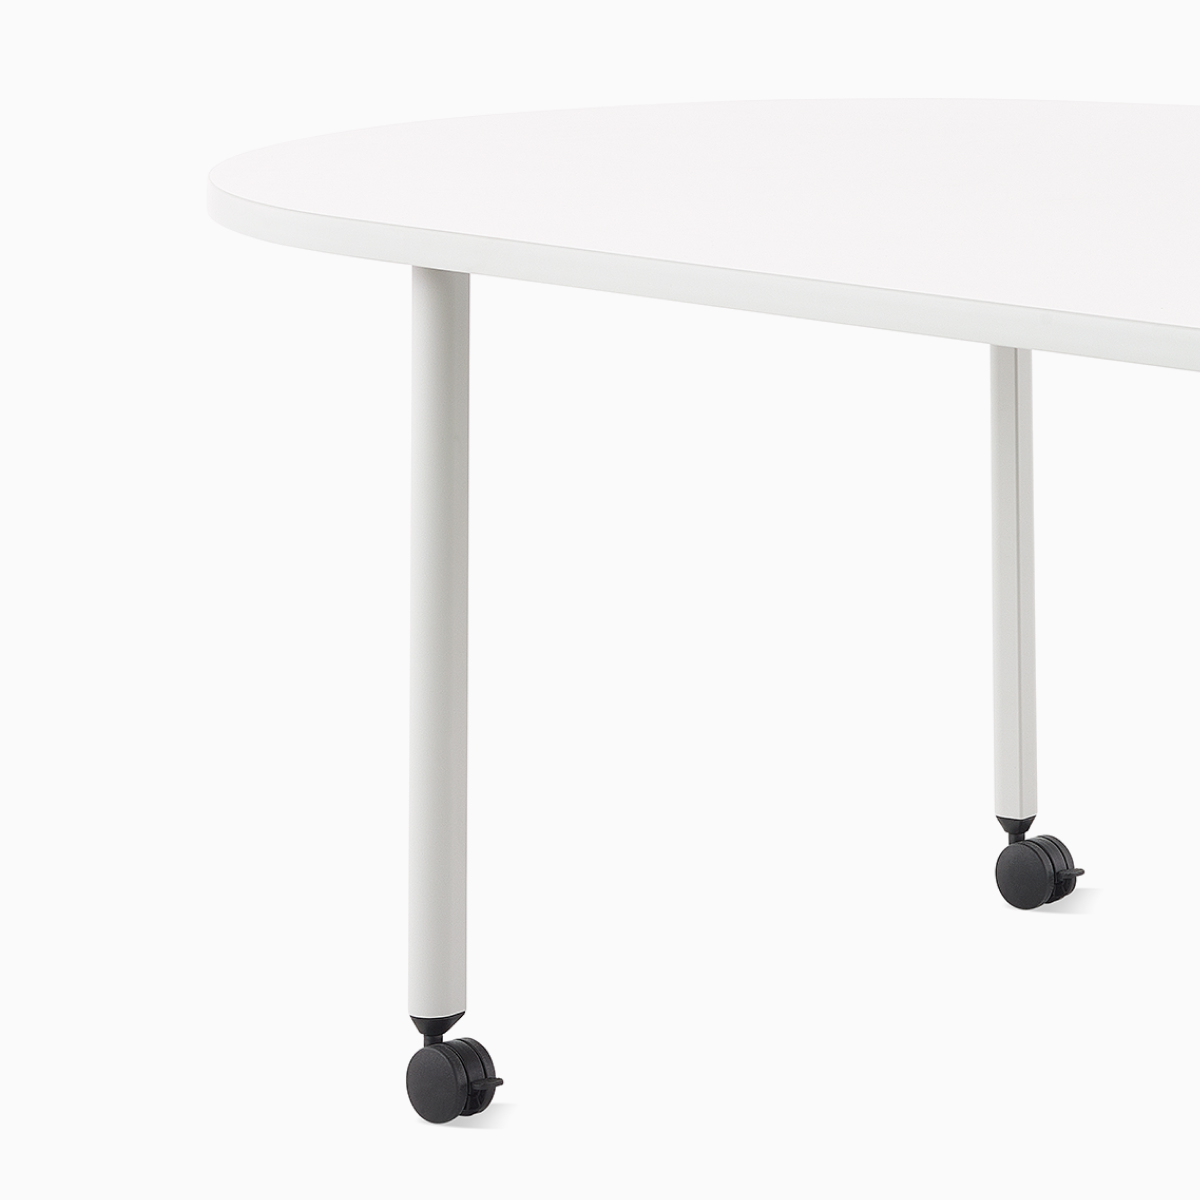 Una Mesa para reuniones en grupo OE1 con superficie en blanco y patas en gris, vista desde un ángulo.